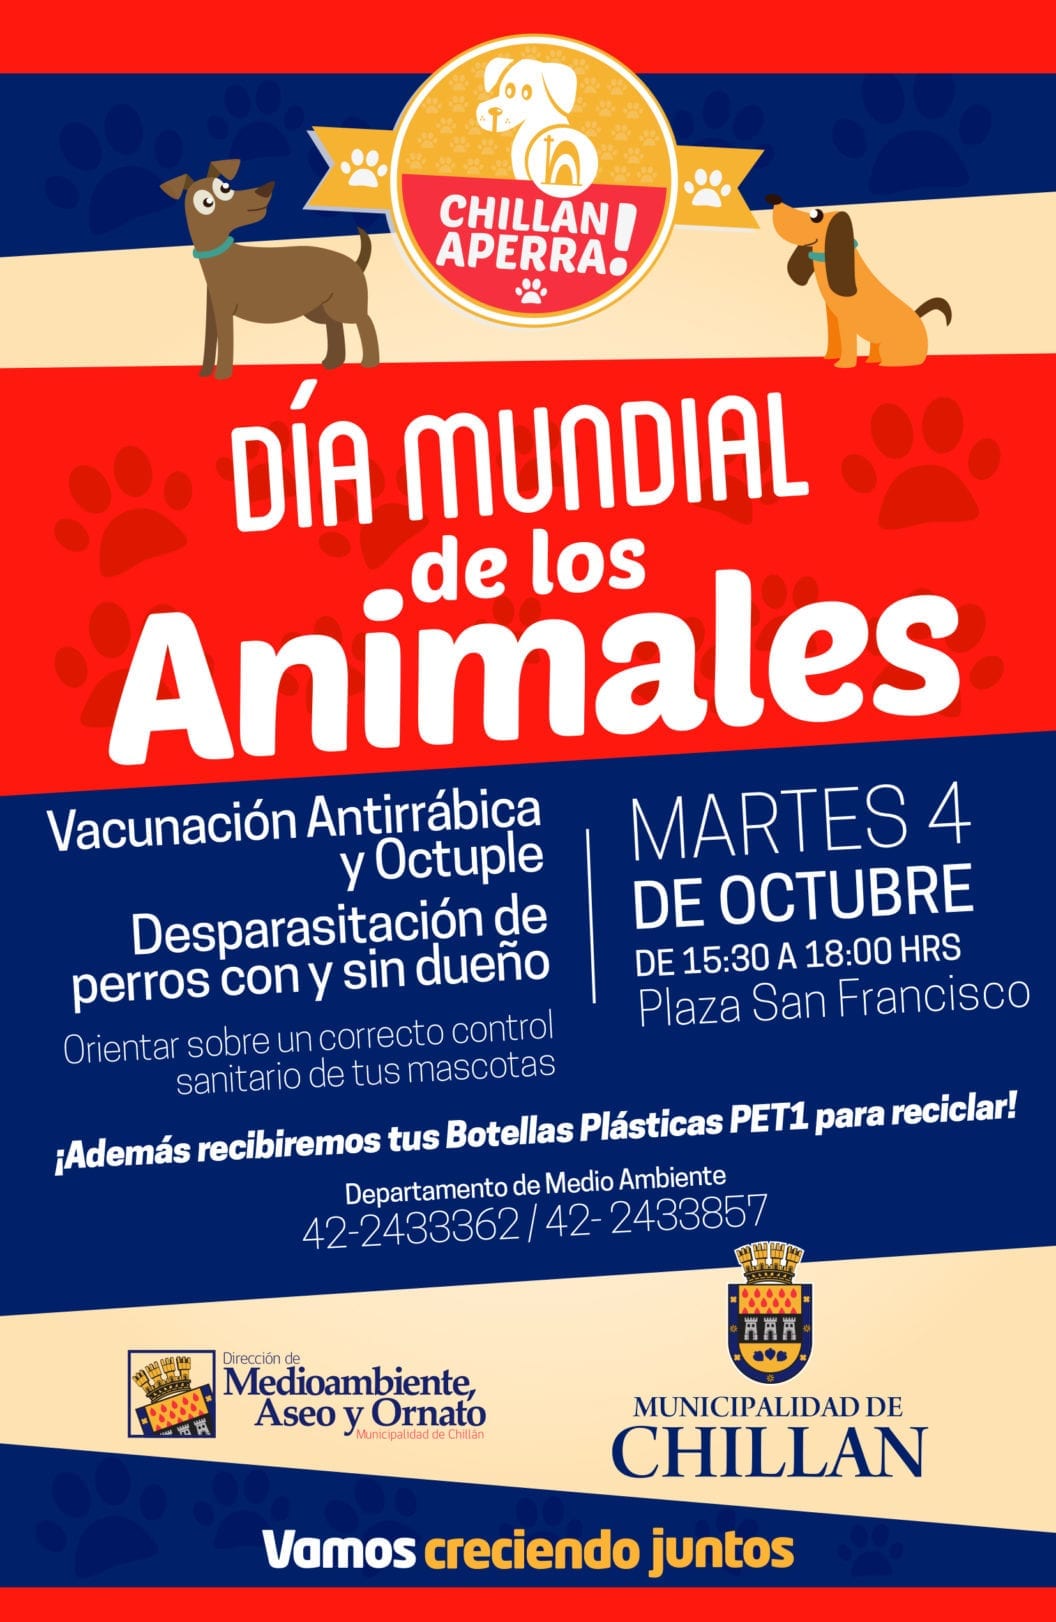 Celebrarán en Chillán el Día Mundial de los Animales